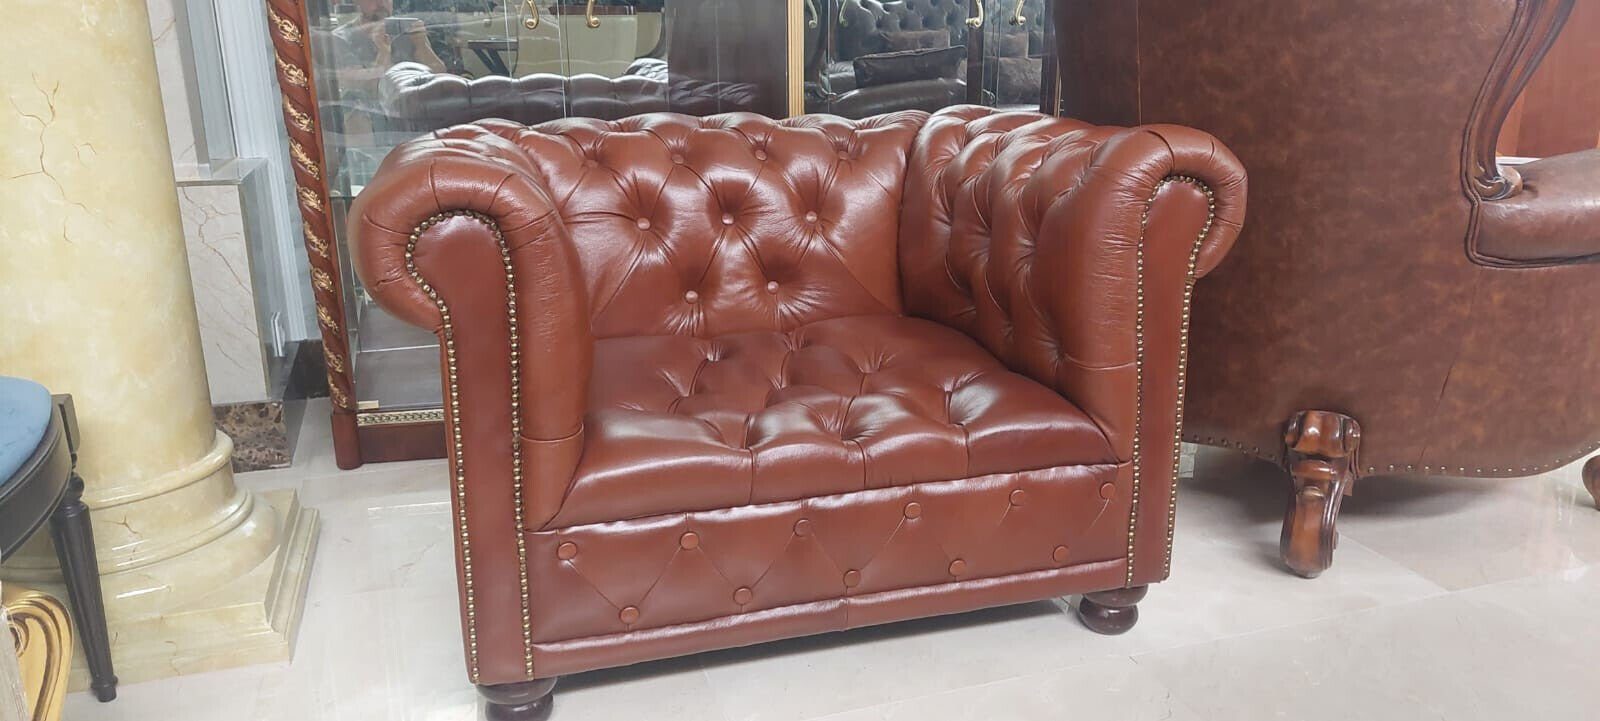 1 JVmoebel Polster Kunstleder Chesterfield in Sitzer Chesterfield-Sessel Europa Made Couch Sessel Sofort, Design